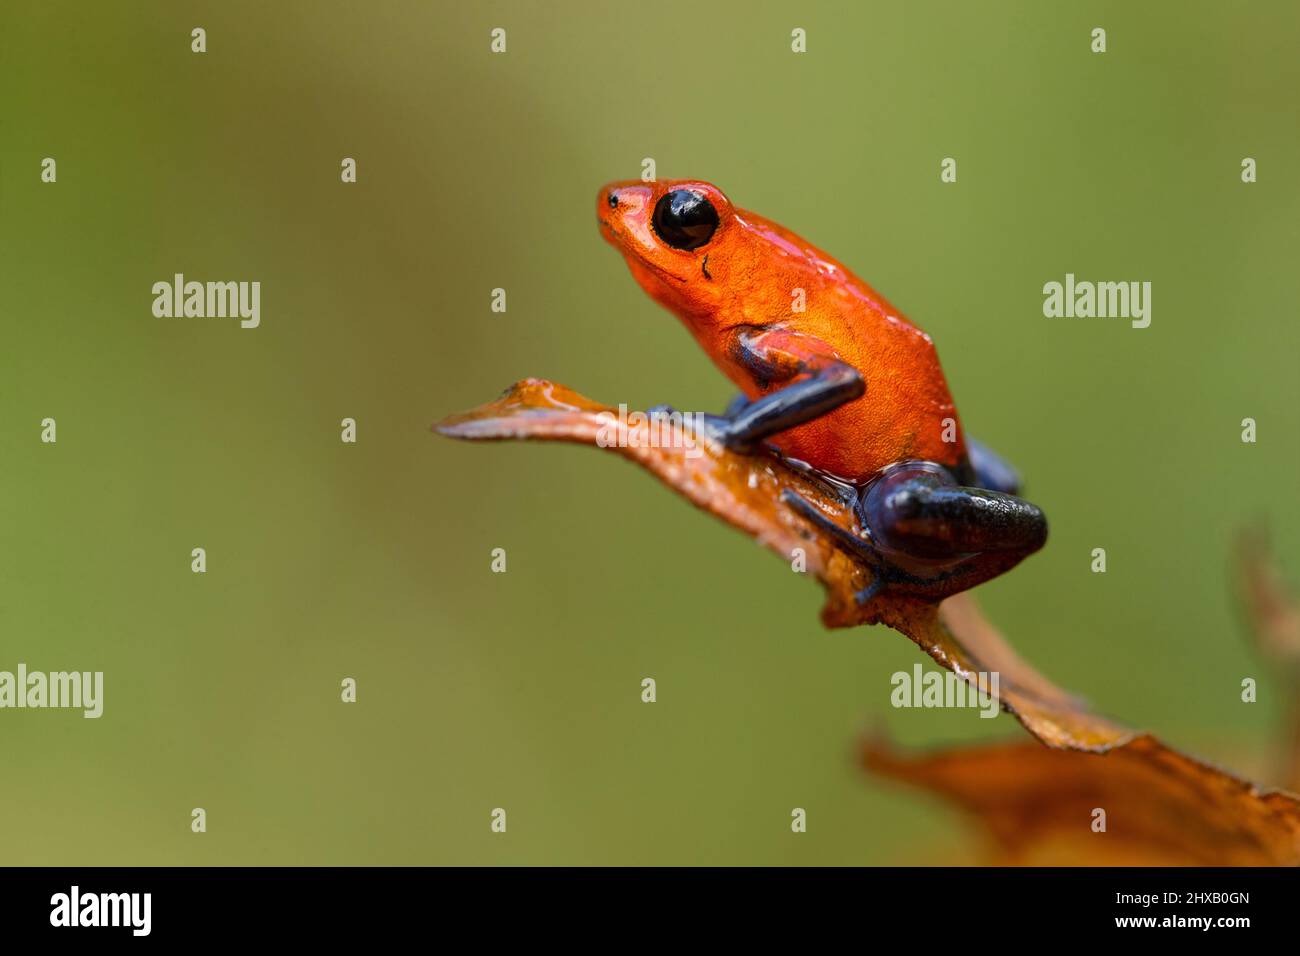 La rana venenosa de fresa (Oophaga pumilio, anteriormente Dendrobates pumilio) es una especie de rana venenosa de dardo Foto de stock